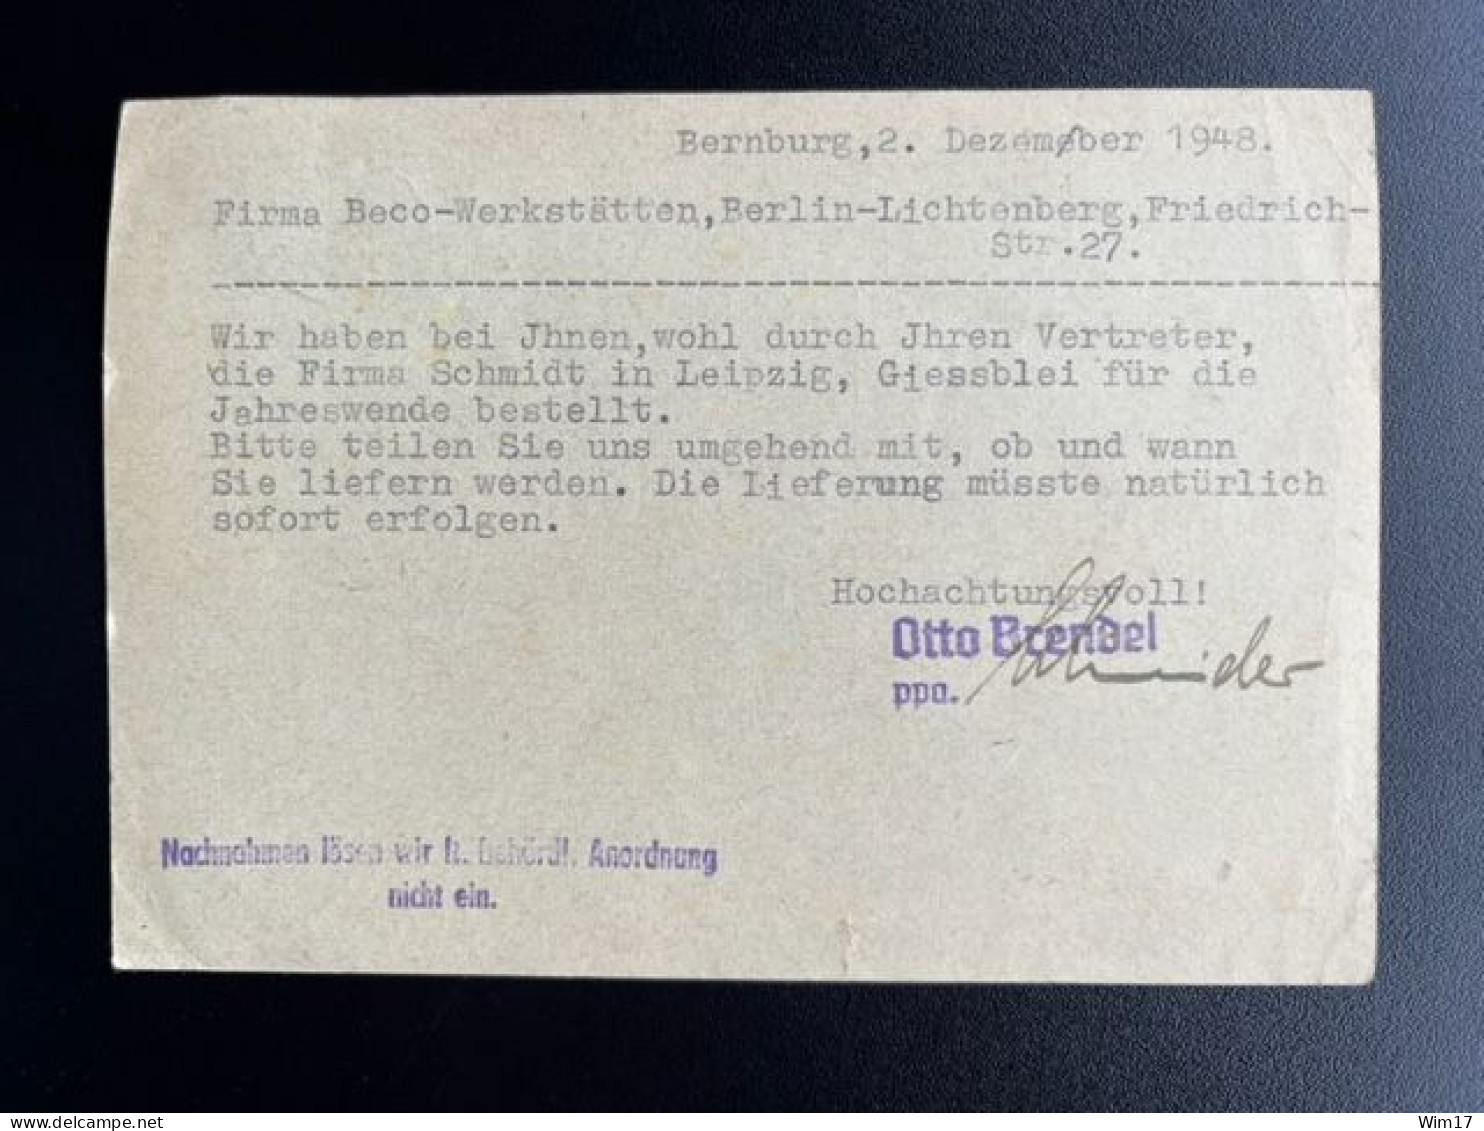 GERMANY 1948 POSTCARD BERNBURG TO BERLIN LICHTENBERG 03-12-1948 DUITSLAND DEUTSCHLAND - Ganzsachen